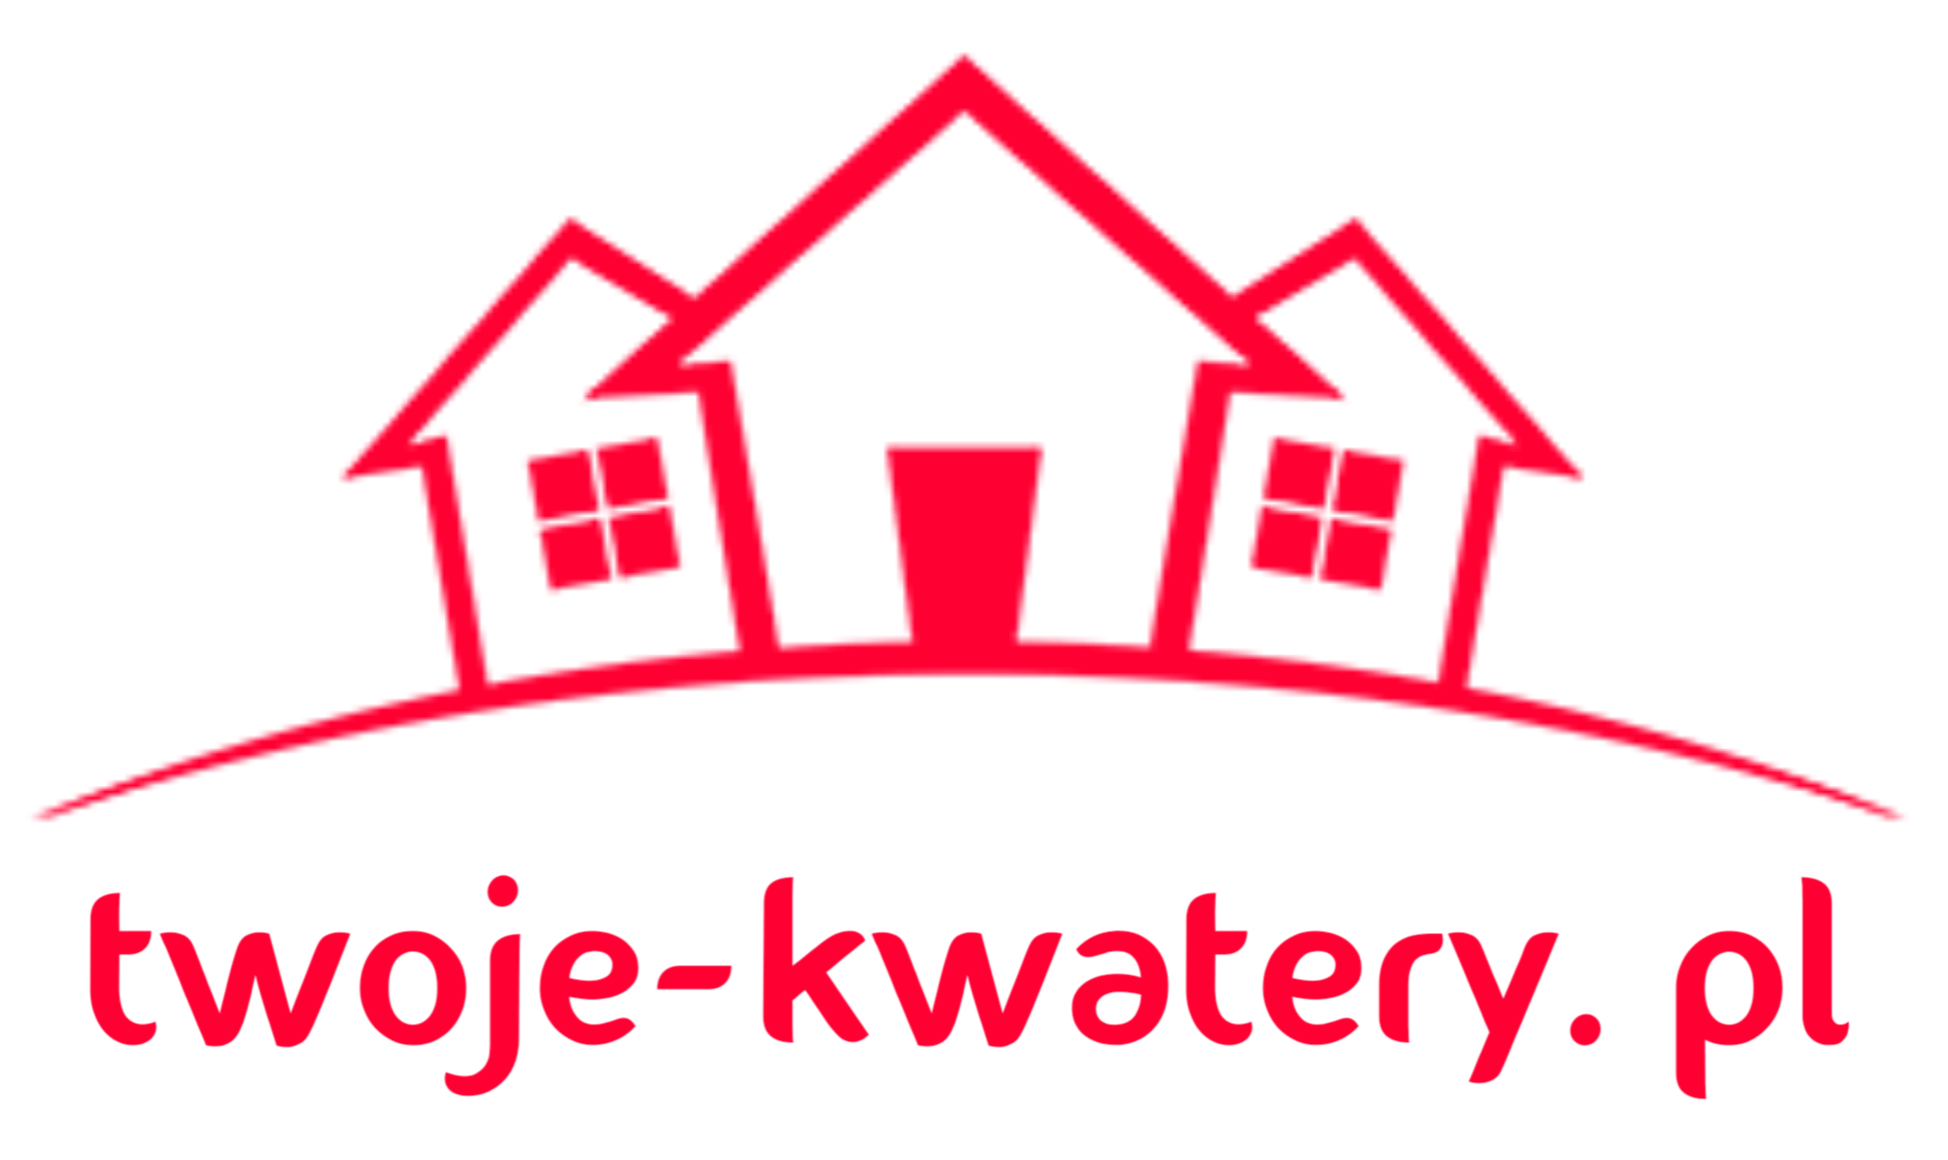 Twoje-Kwatery.pl - hostele, kwatery, noclegi pracownicze